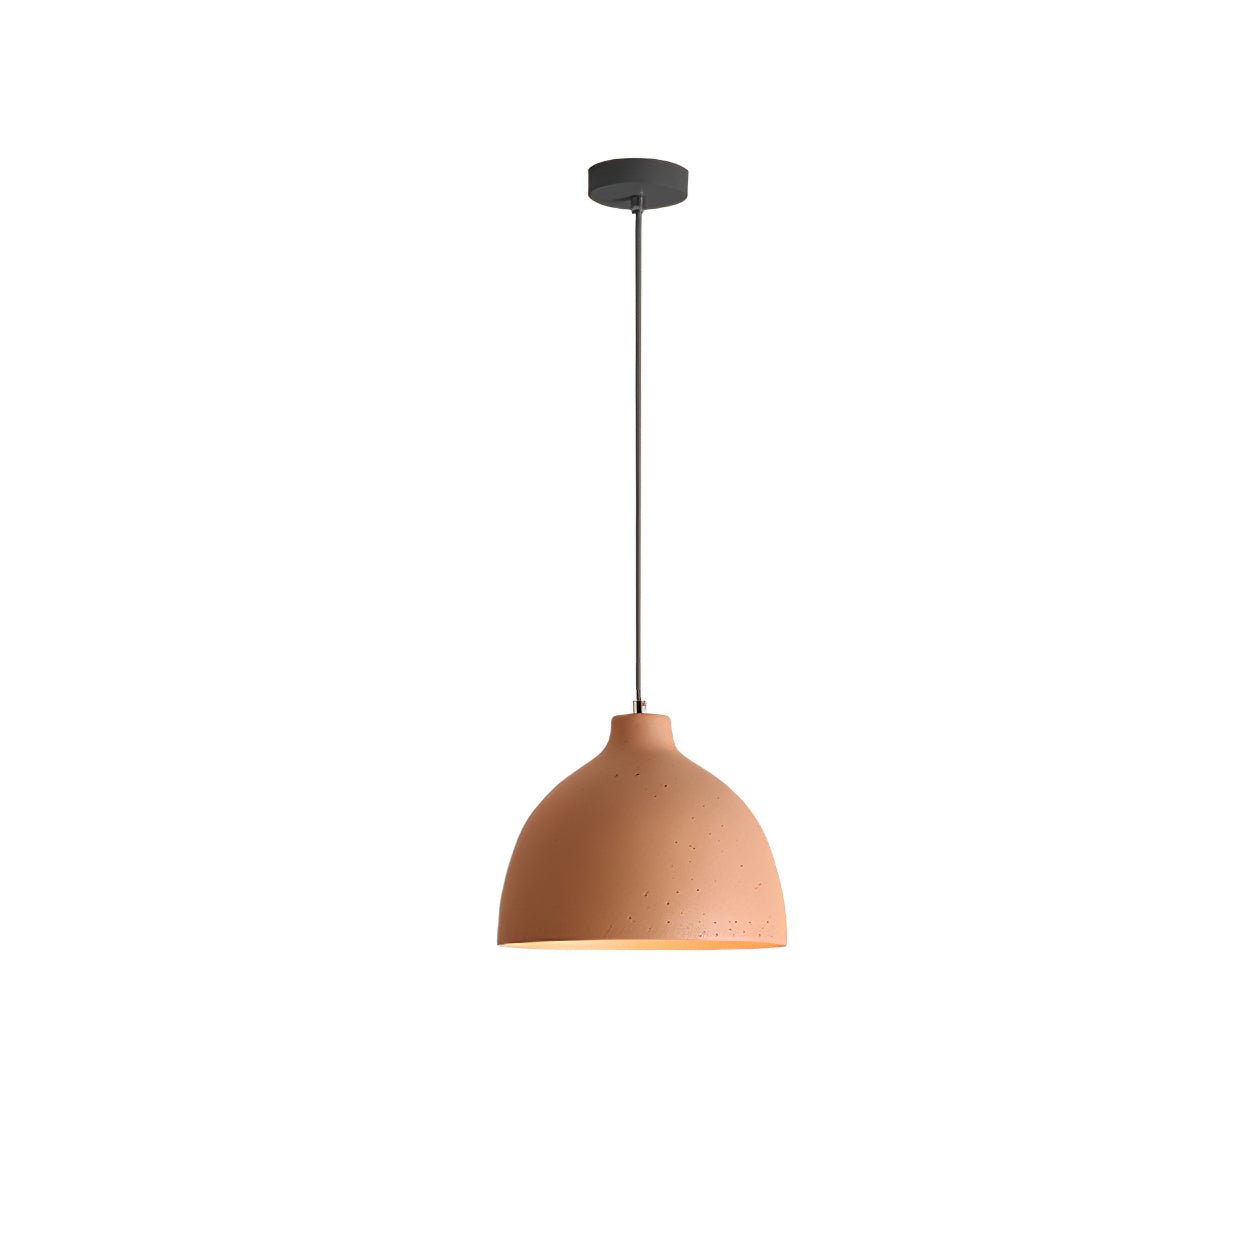 Orange Resin Bowl Pendant Lamp - Diameter 11.4 inches x Height 59 inches (29cm x 150cm)